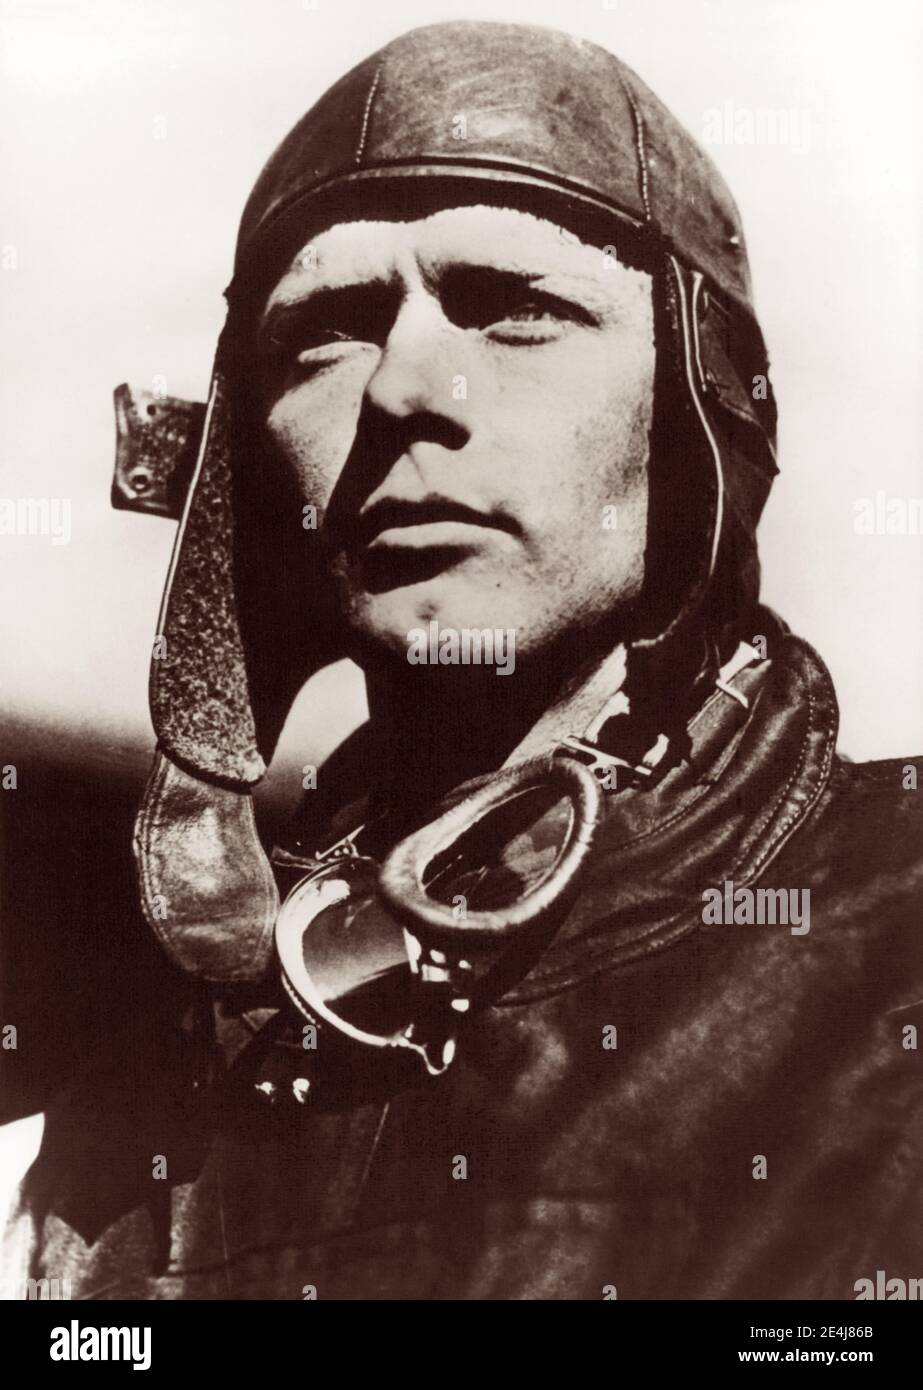 Charles Lindbergh (1902-1974), amerikanischer Pilot, der am 20. Und 21. Mai 1927 den ersten transatlantischen Einzelflug von New York nach Paris mit dem Spirit of St. Louis machte. Stockfoto